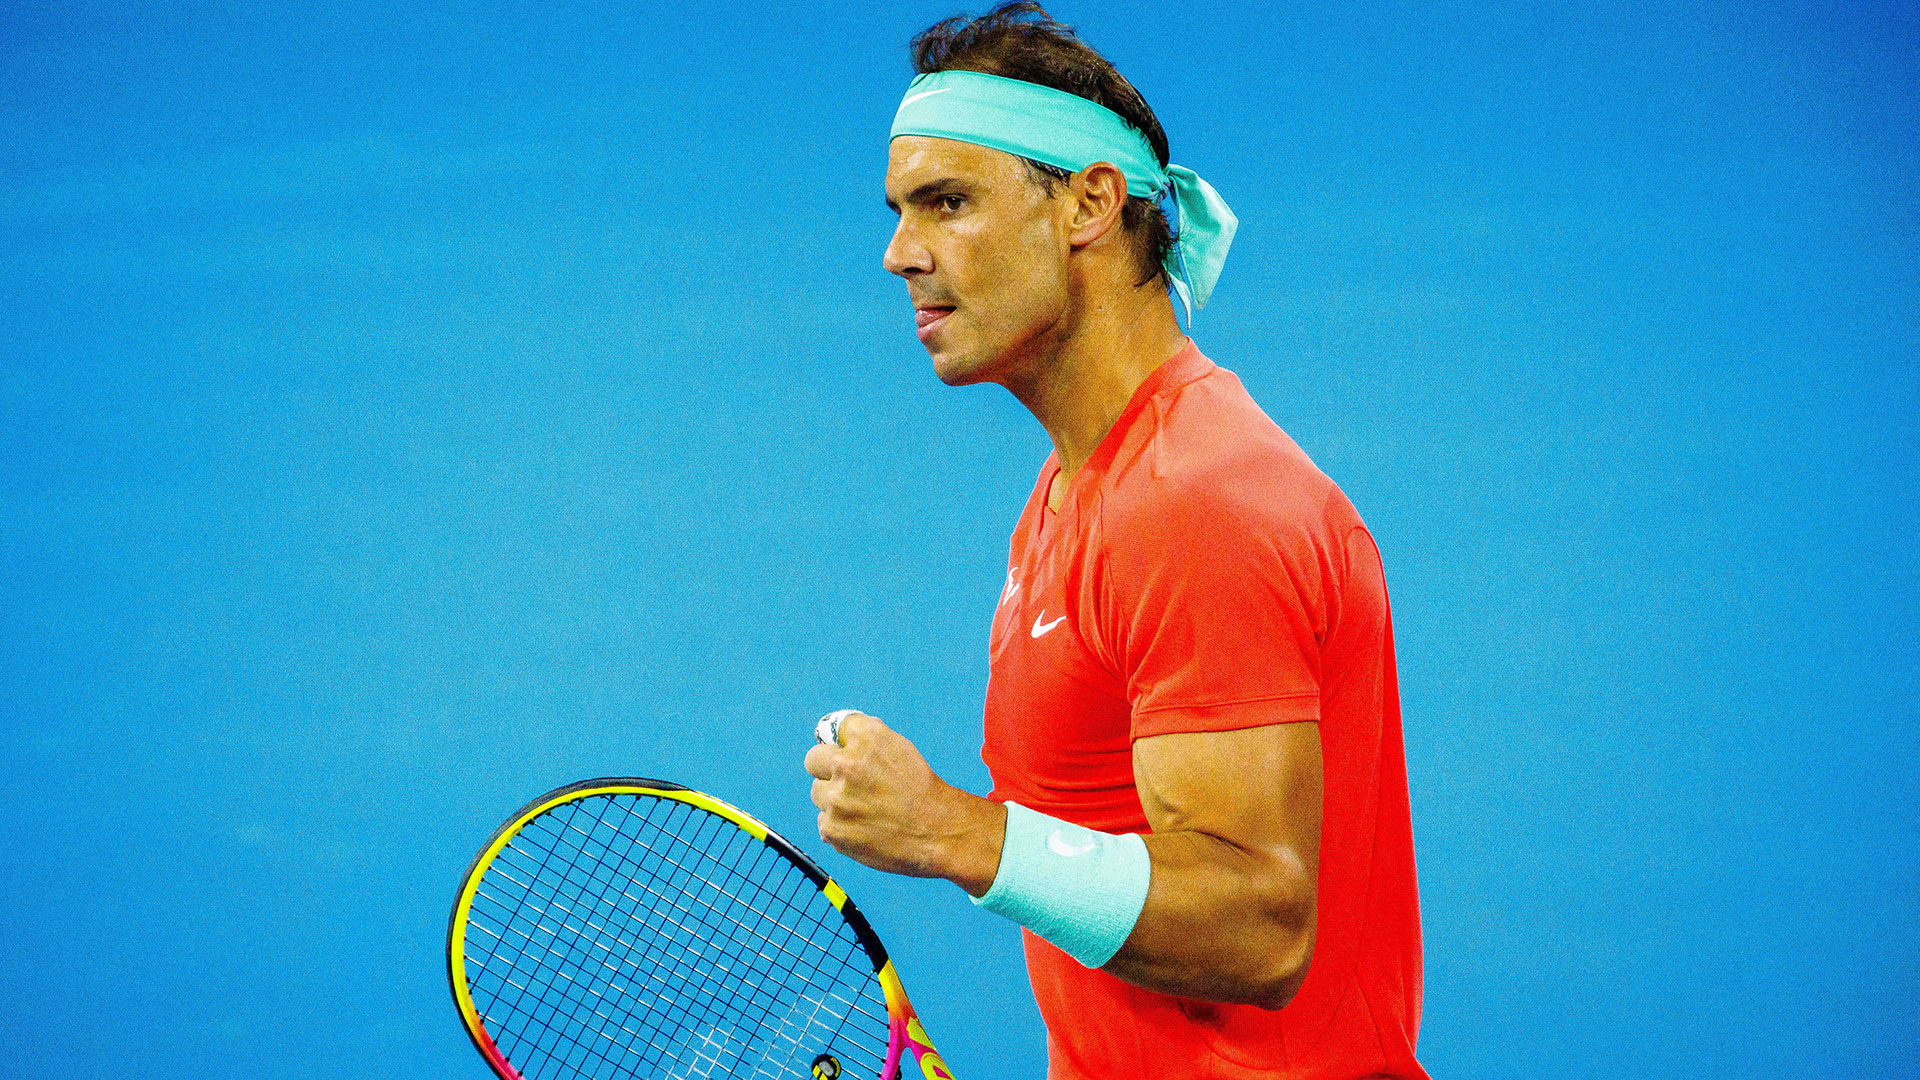 Rafael Nadal ganó en su regreso al tenis tras 349 días sin jugar: el detalle  en su entrada y el grito de furia tras un punto genial - Infobae